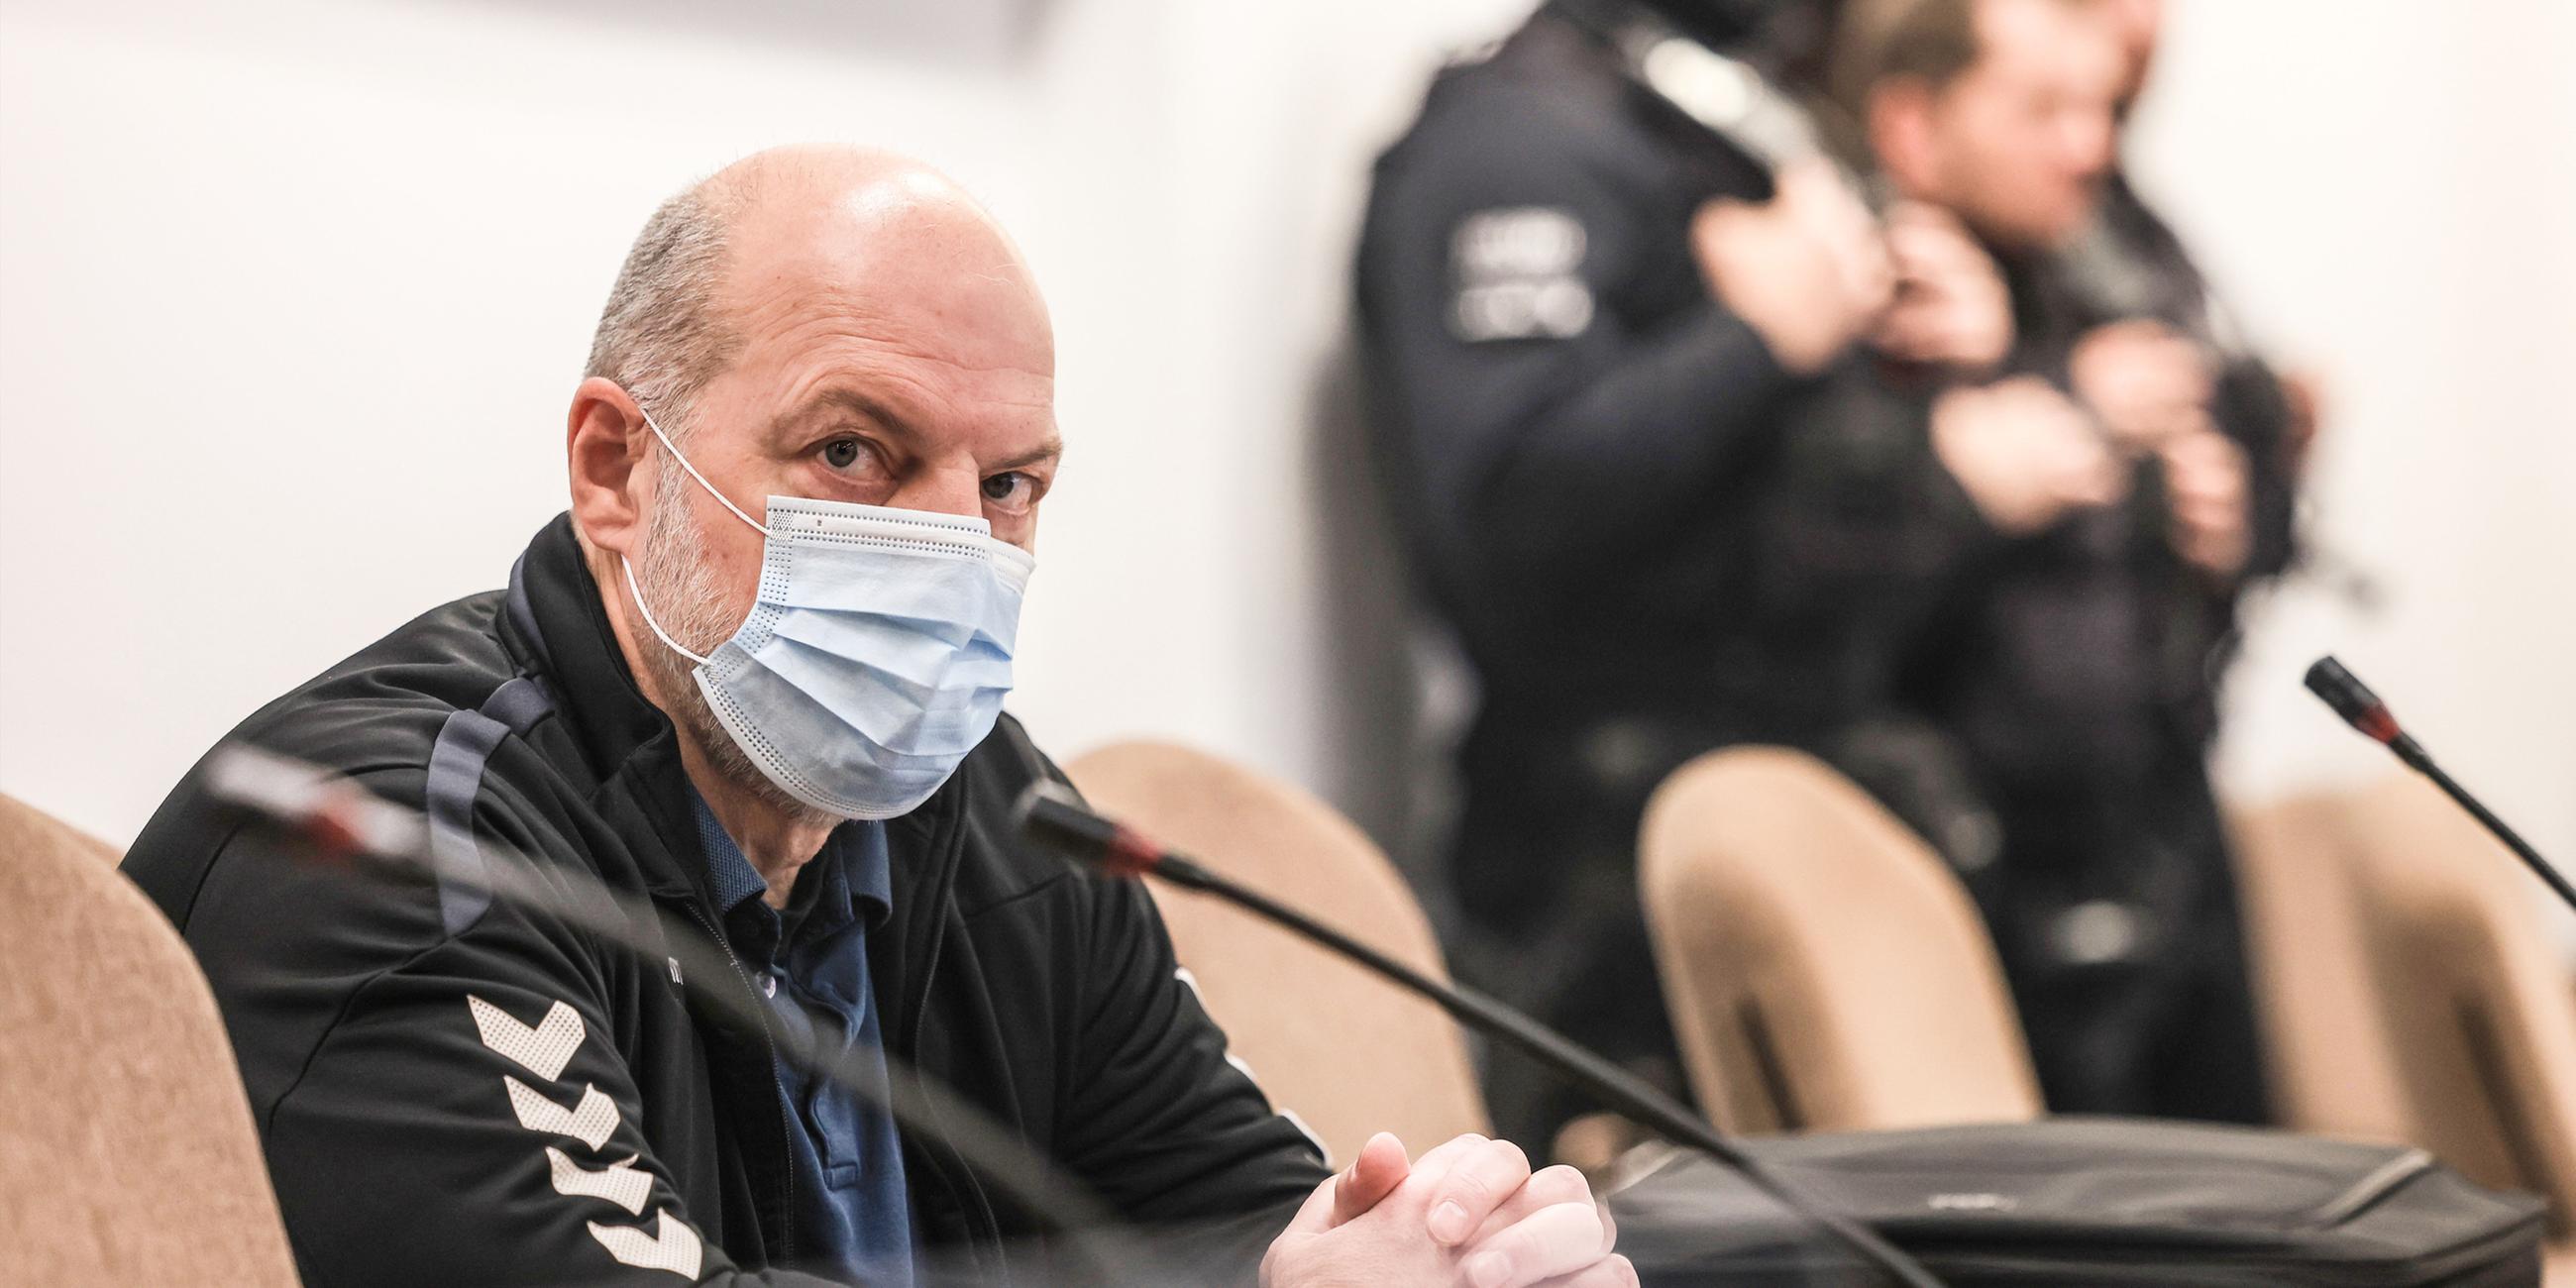 Thomas Drach mit Mundschutzmaske im Gerichtssaal